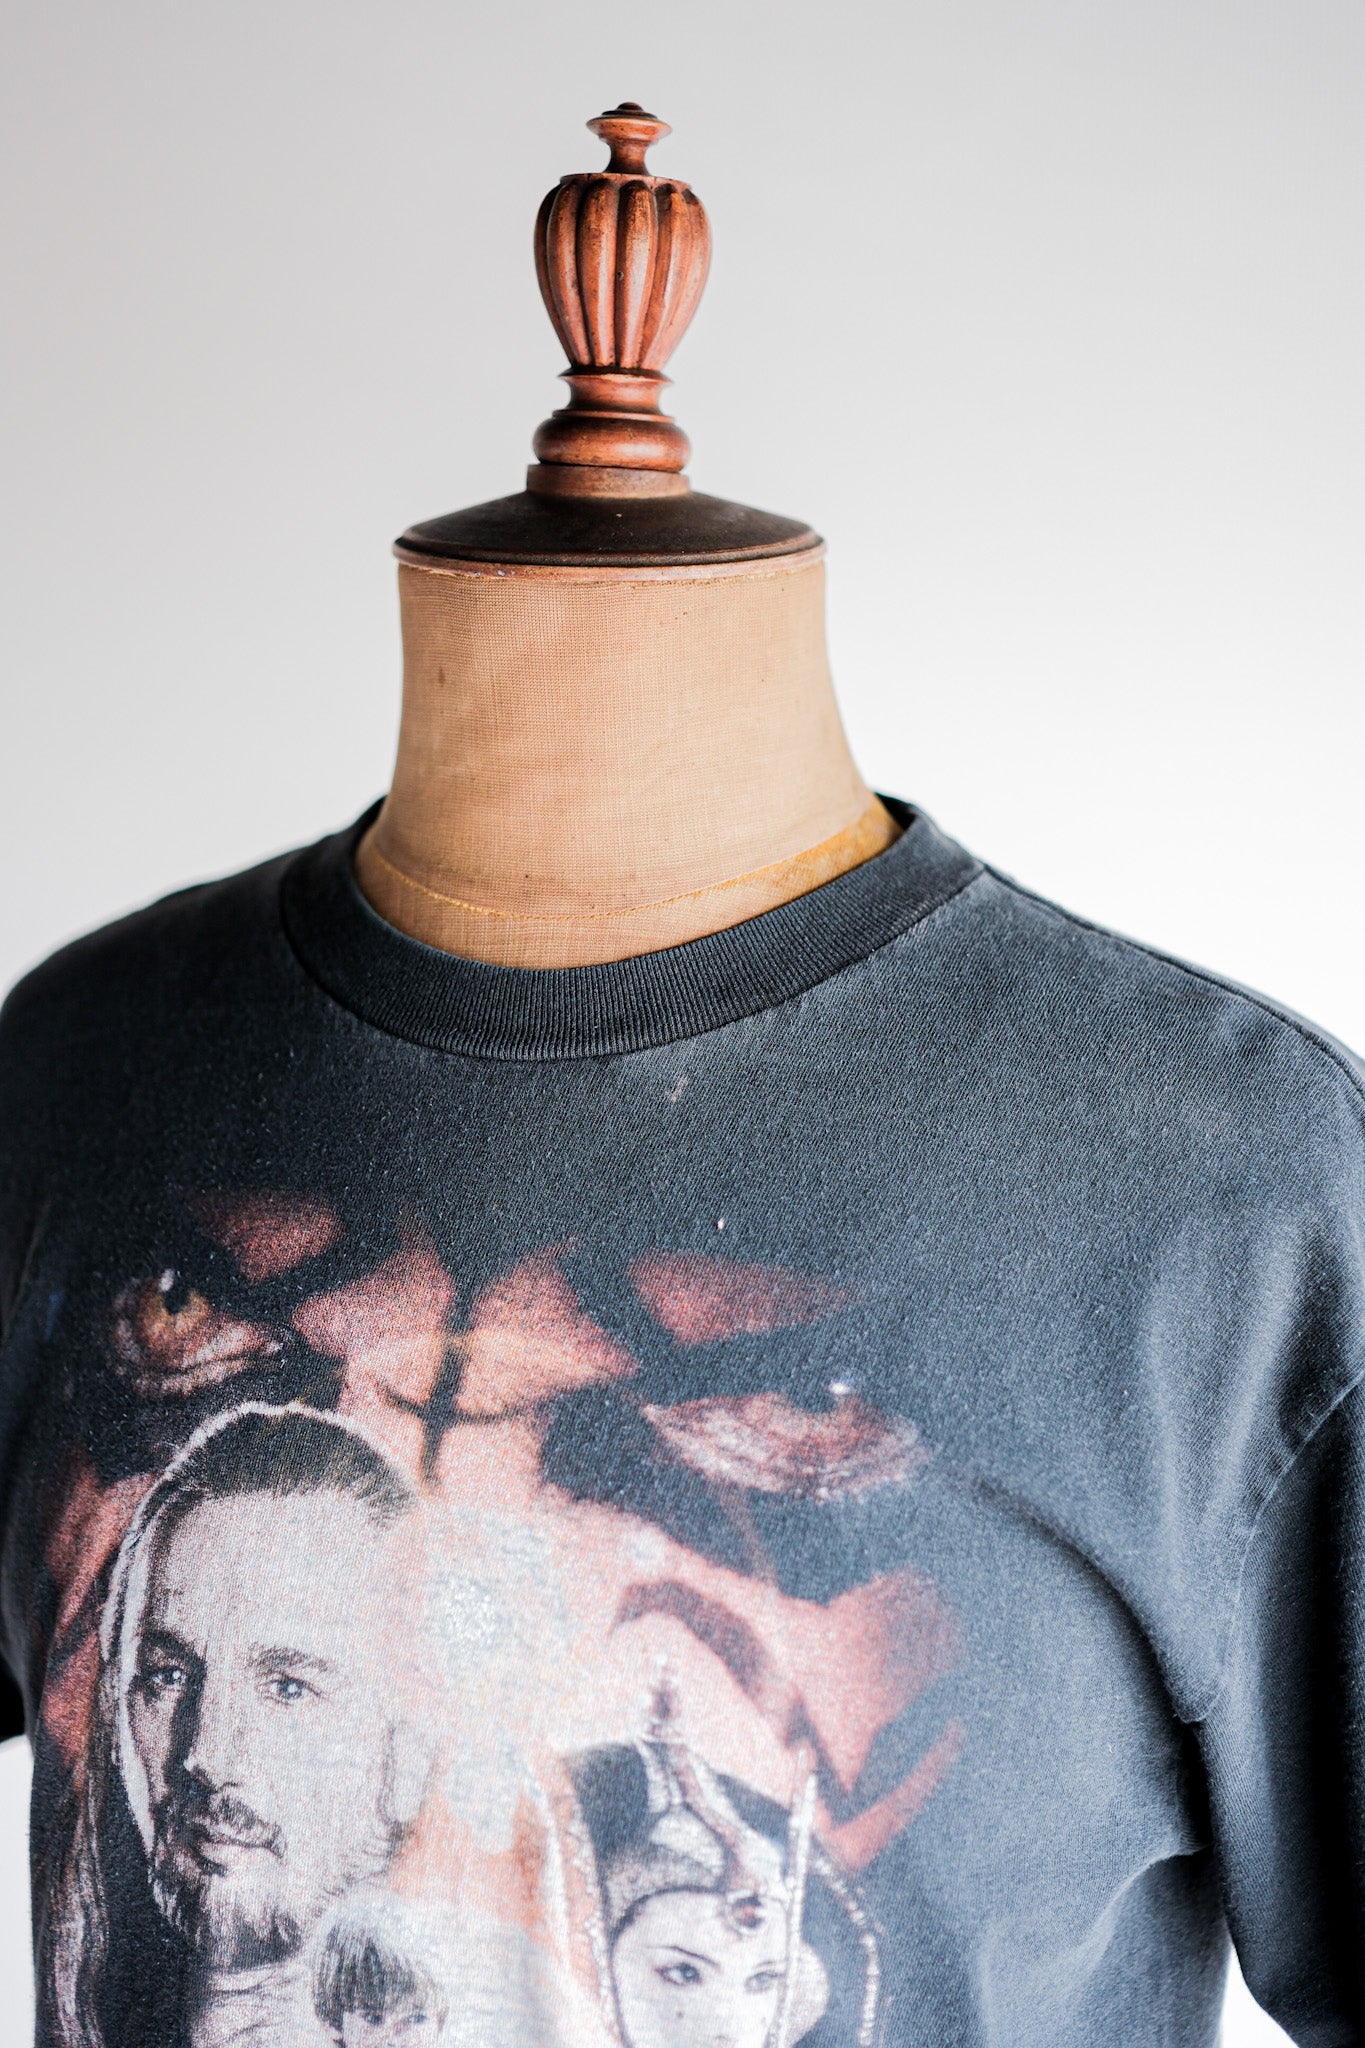 [~ 90 년대] 빈티지 영화 프린트 티셔츠 크기 .M "스타 워즈 에피소드 I"